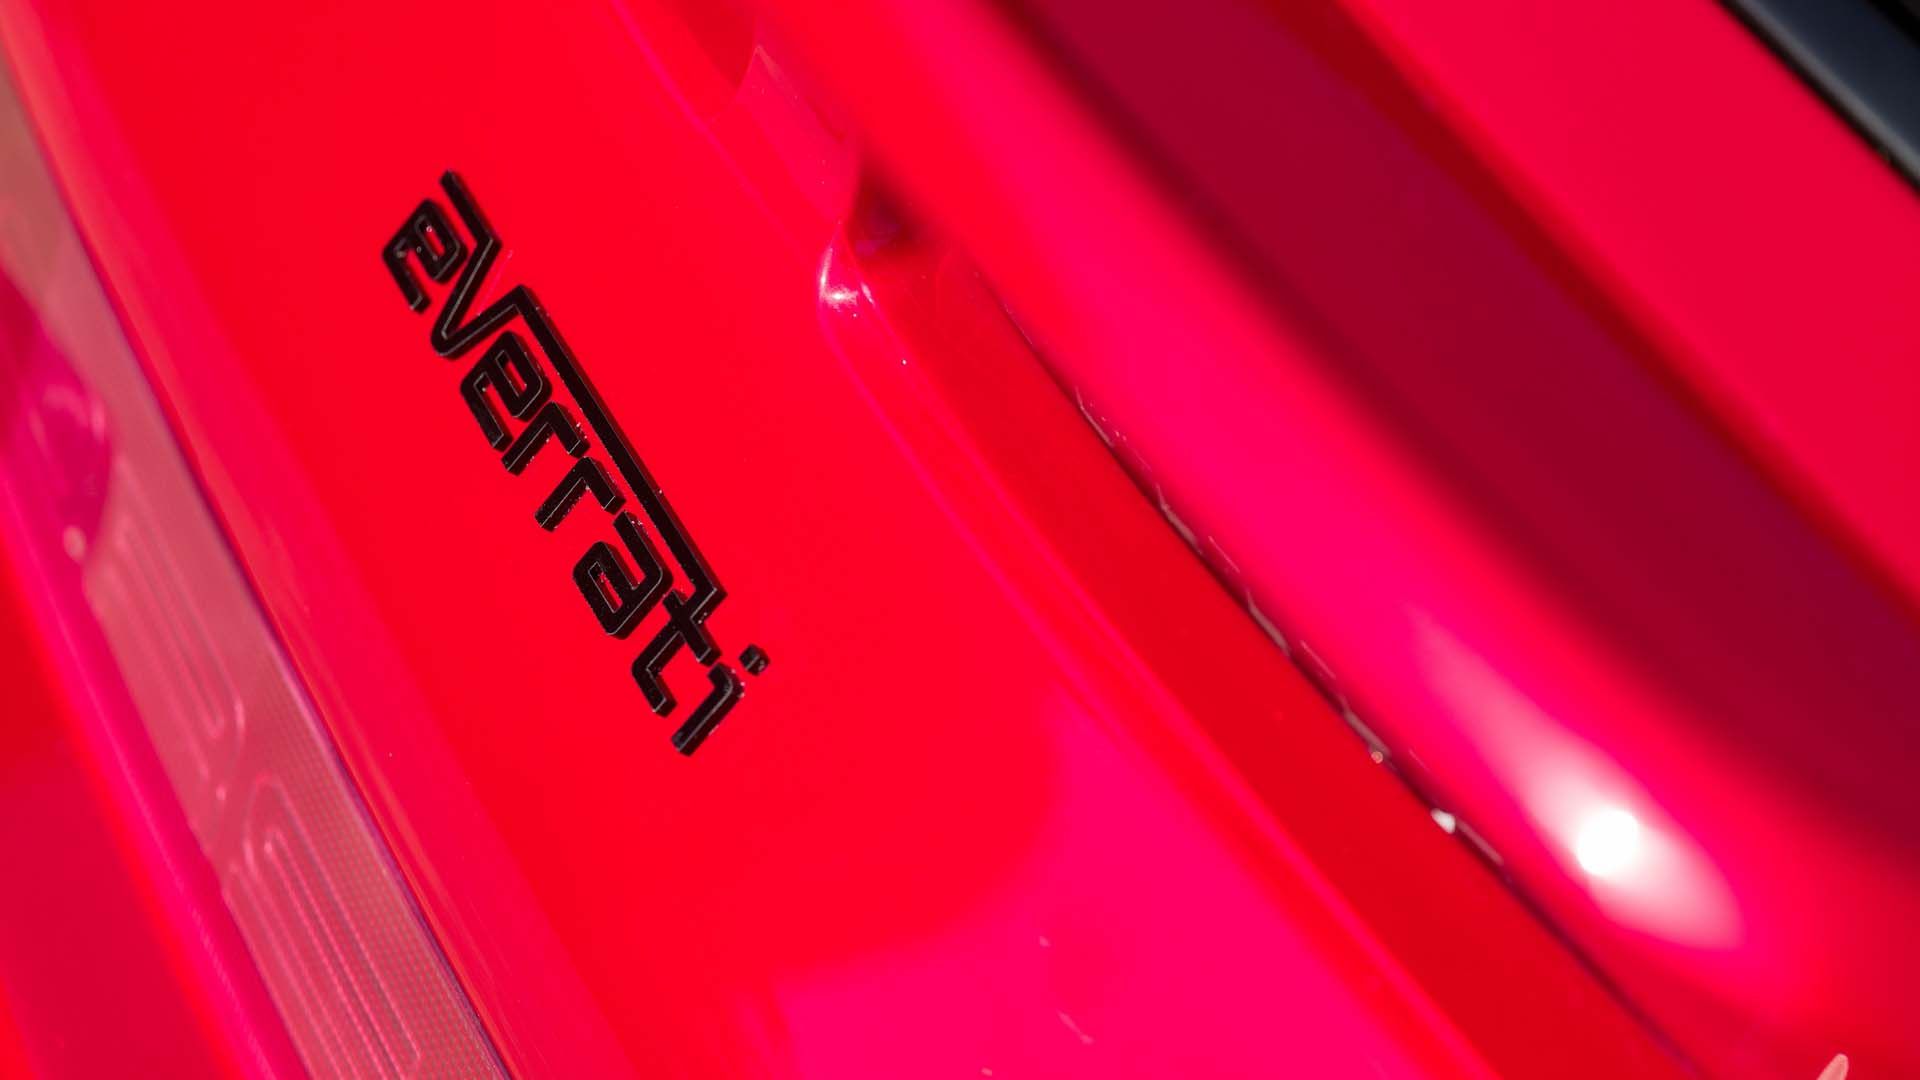 بدنه خودروی برقی پورشه 911 اوررتی / Everrati Porsche 911 EV  قرمز رنگ